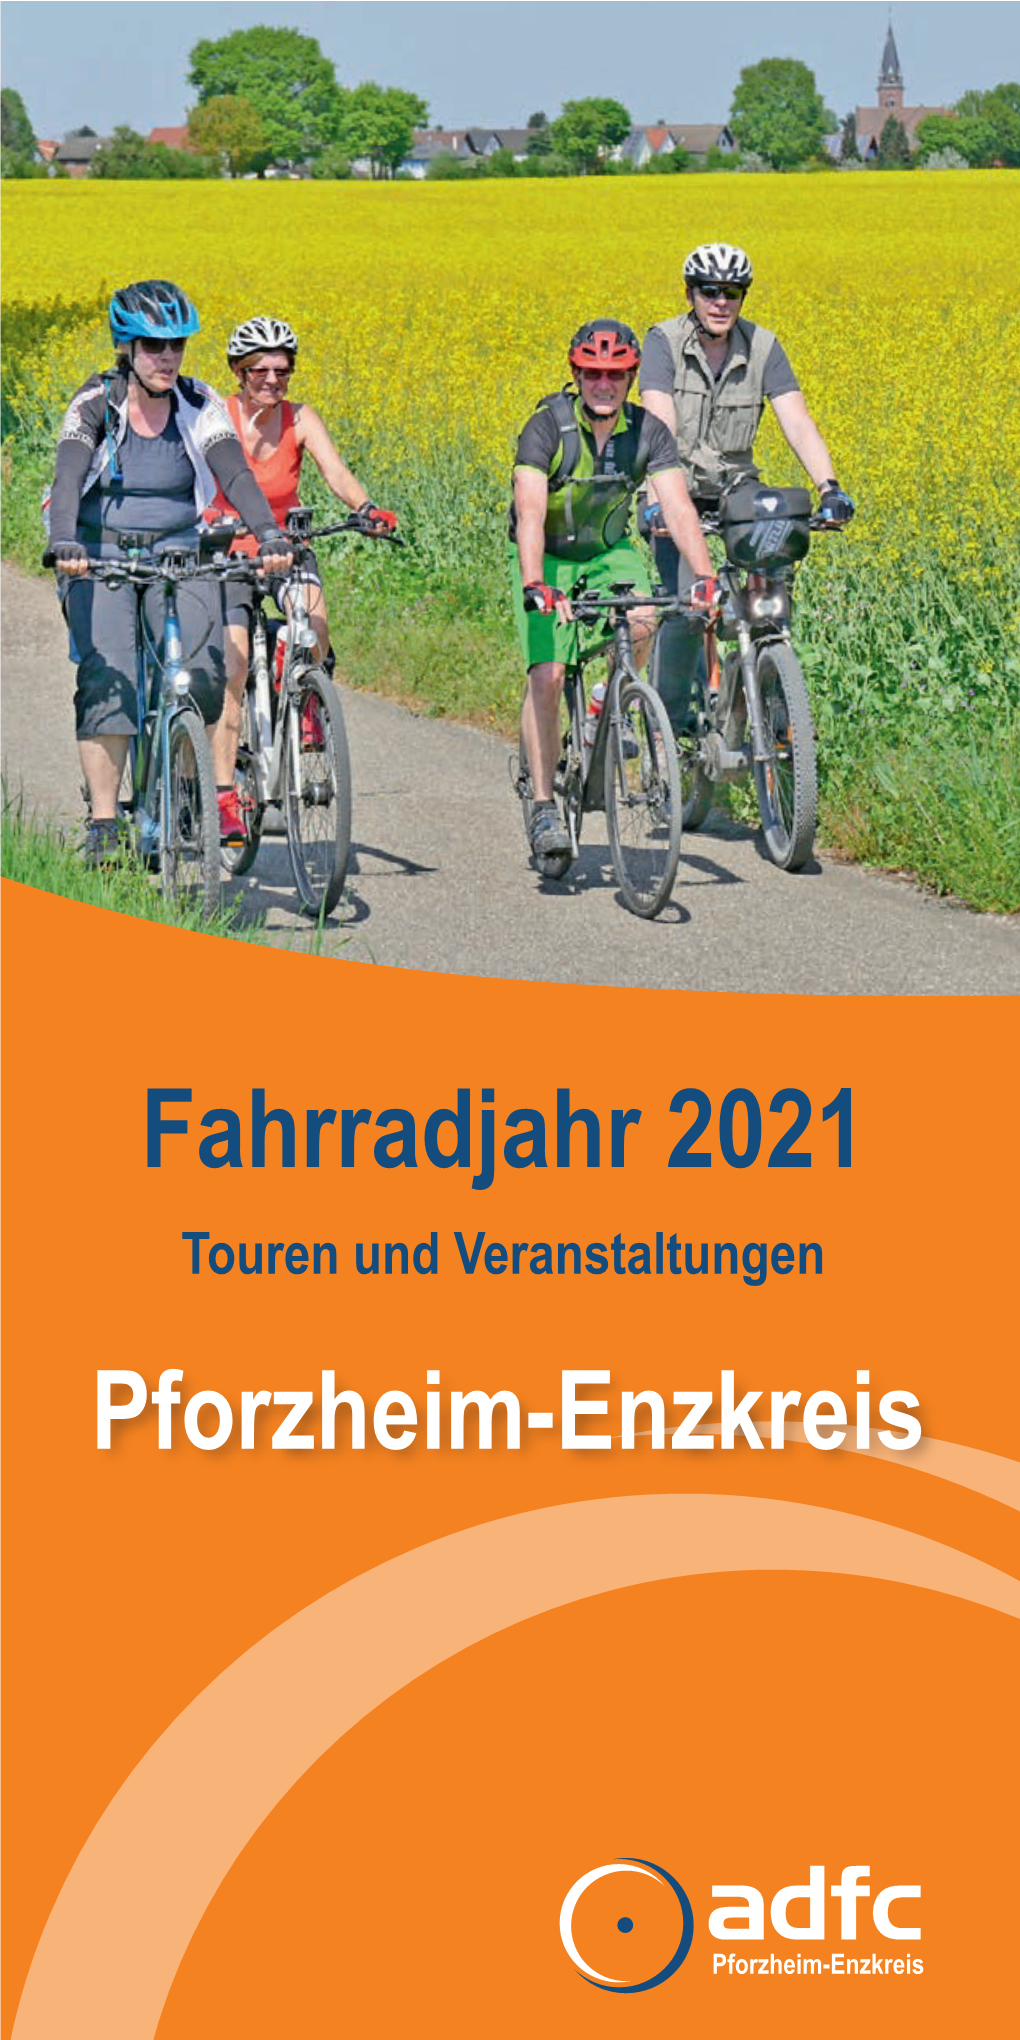 Fahrradjahr 2021 Pforzheim-Enzkreis